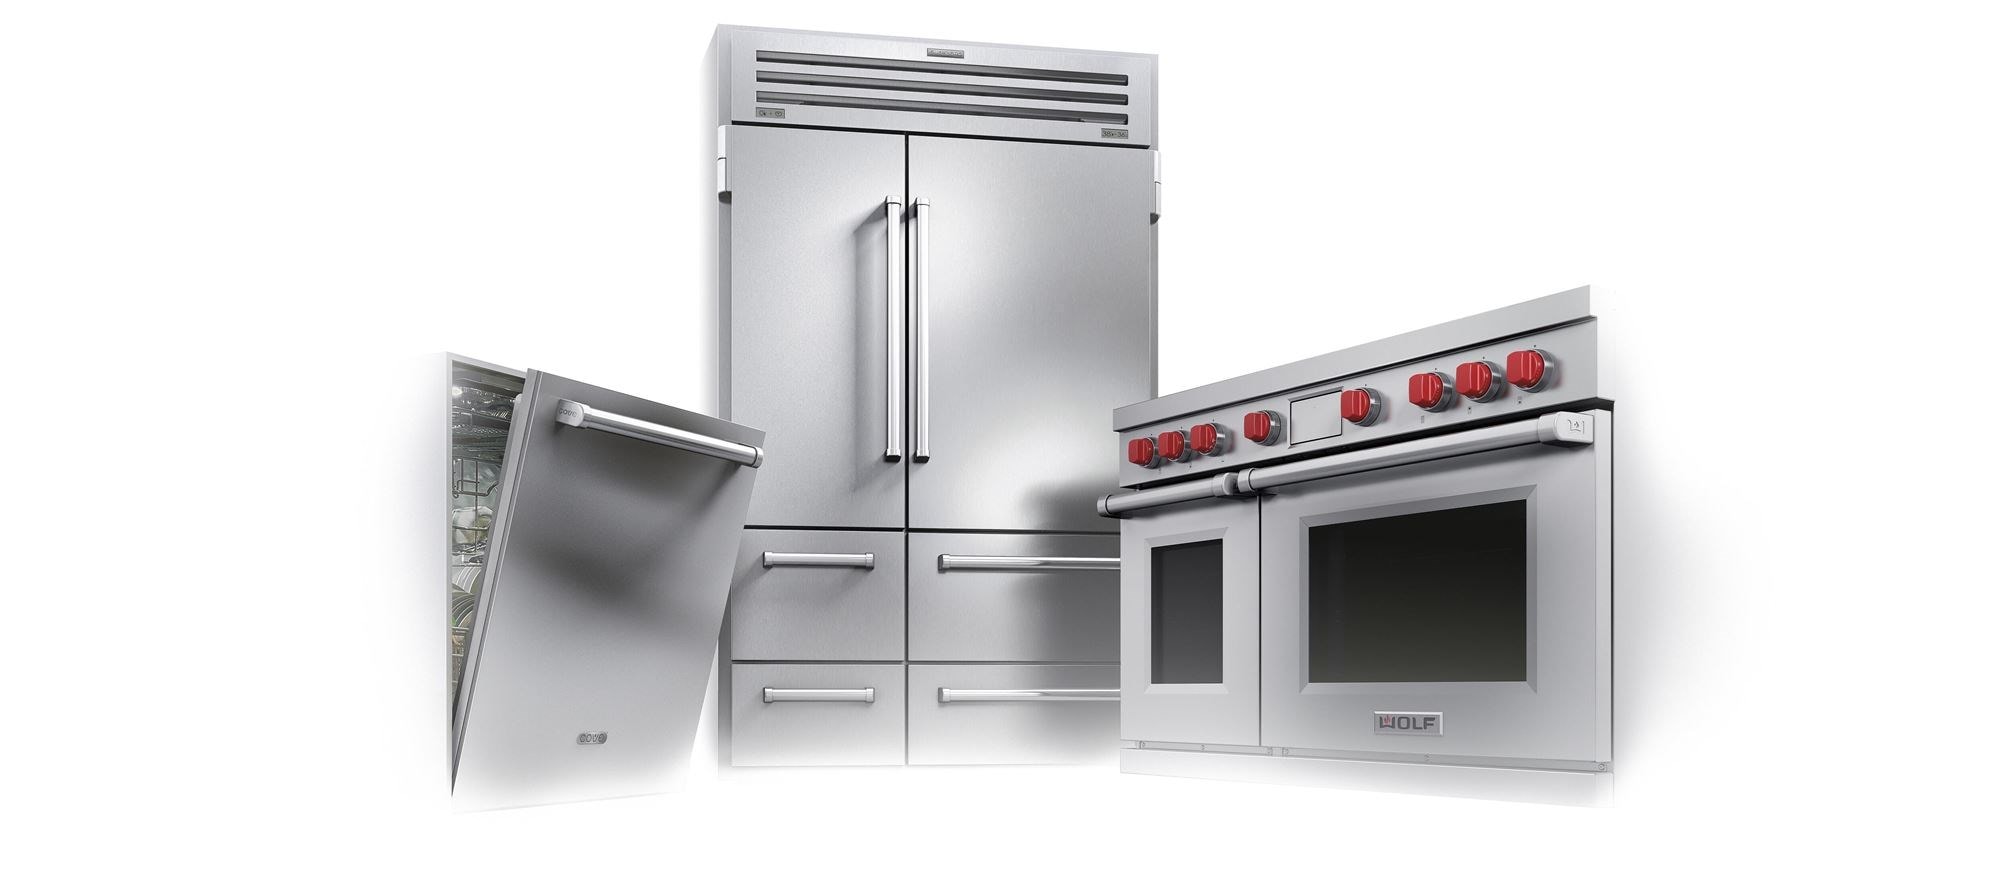 L’ensemble d’appareils électroménagers de cuisine de luxe emblématique comprend une cuisinière mixte Wolf, un réfrigérateur Sub-Zero 48 po Pro et un lave-vaisselle Cove 24 po. 